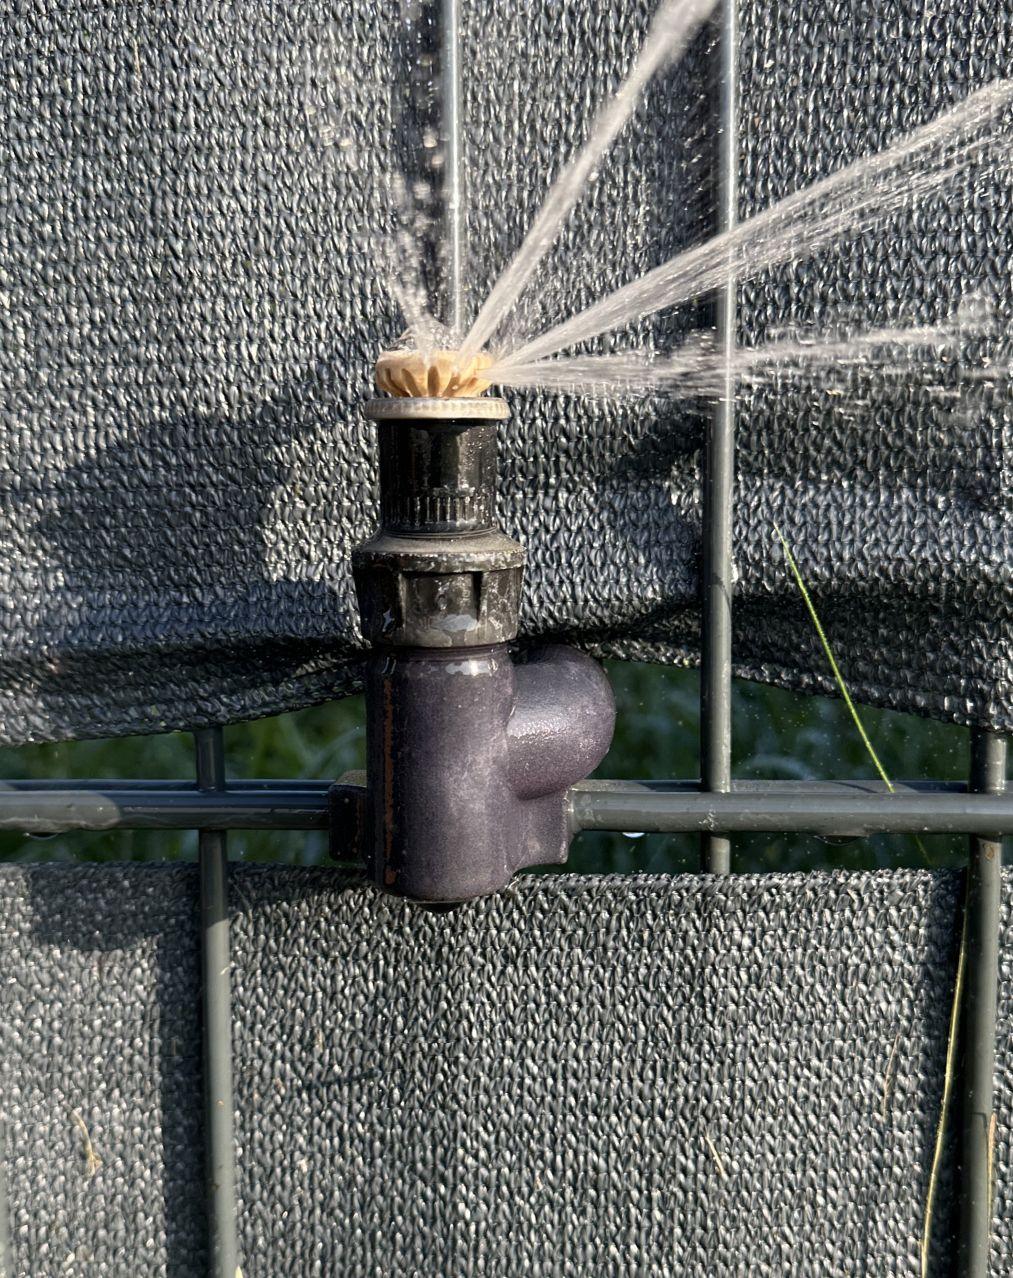 Anwendungsbeispiel für einen Gartenschlauch-Adapter, der einen Sprinkler an einem Zaun feixieren kann